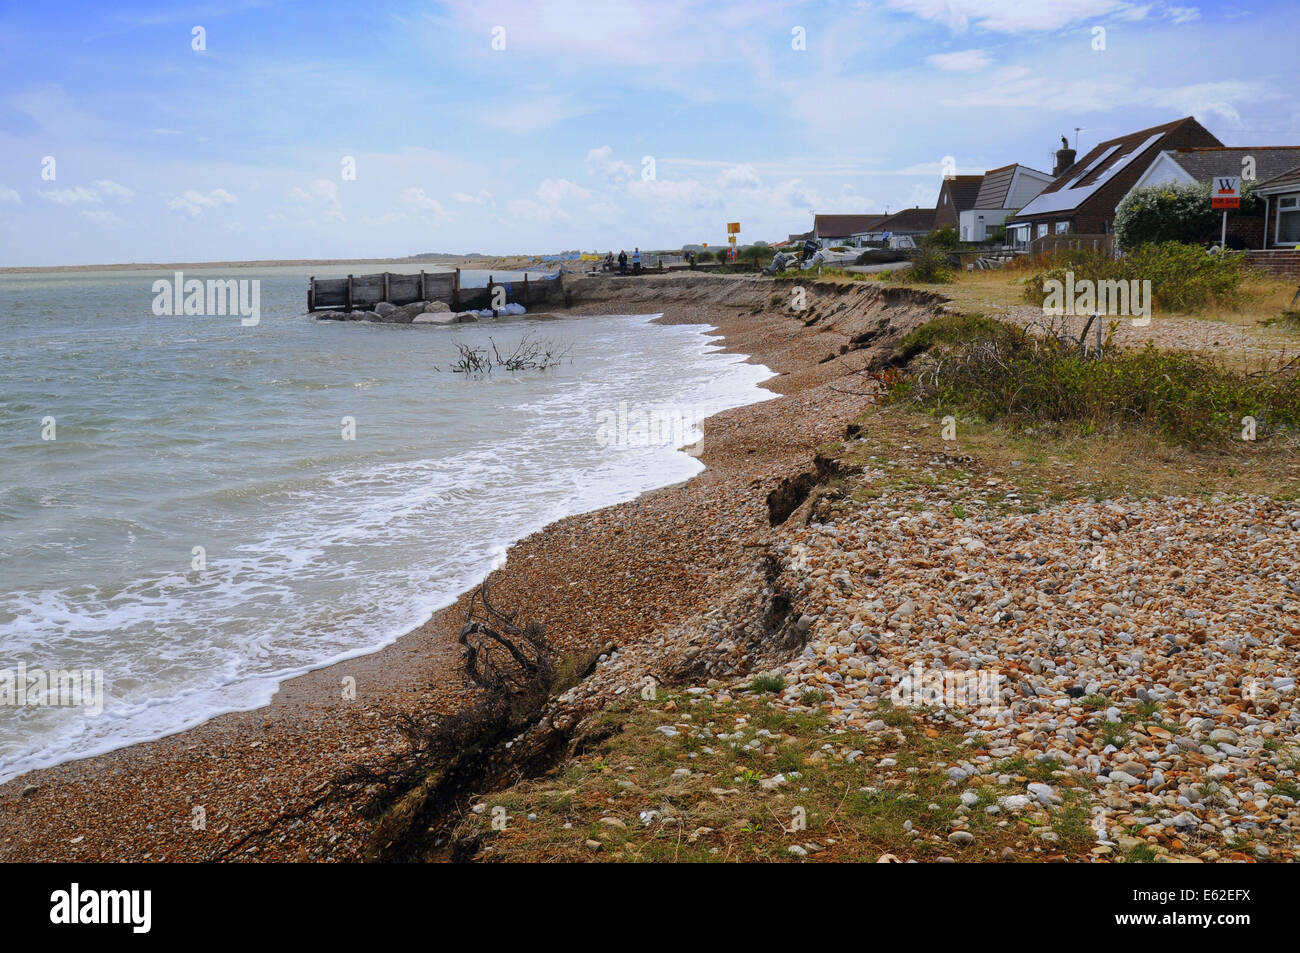 Pagham, West Sussex, UK.12 August 2014.Coastal Erosion führt weiter entlang der Südküste durch den letzten heftige Stürme beschleunigt. Bungalows am Strand von Pagham sind jetzt in der Nähe das vorrückende Meer. Adur District Council werden Anstrengungen unternommen, um die Eigenschaften des LKW offensichtlich heute große Felsen auf dem Kies kippen zu schützen. Einige Einheimische sagen, es ist zu spät und glauben, dass, wenn die großen Spieß Aufbau wieder verletzt wird, wie es in der Vergangenheit war die weitere Erosion ist unvermeidlich. Bildnachweis: David Burr/Alamy Live-Nachrichten Stockfoto